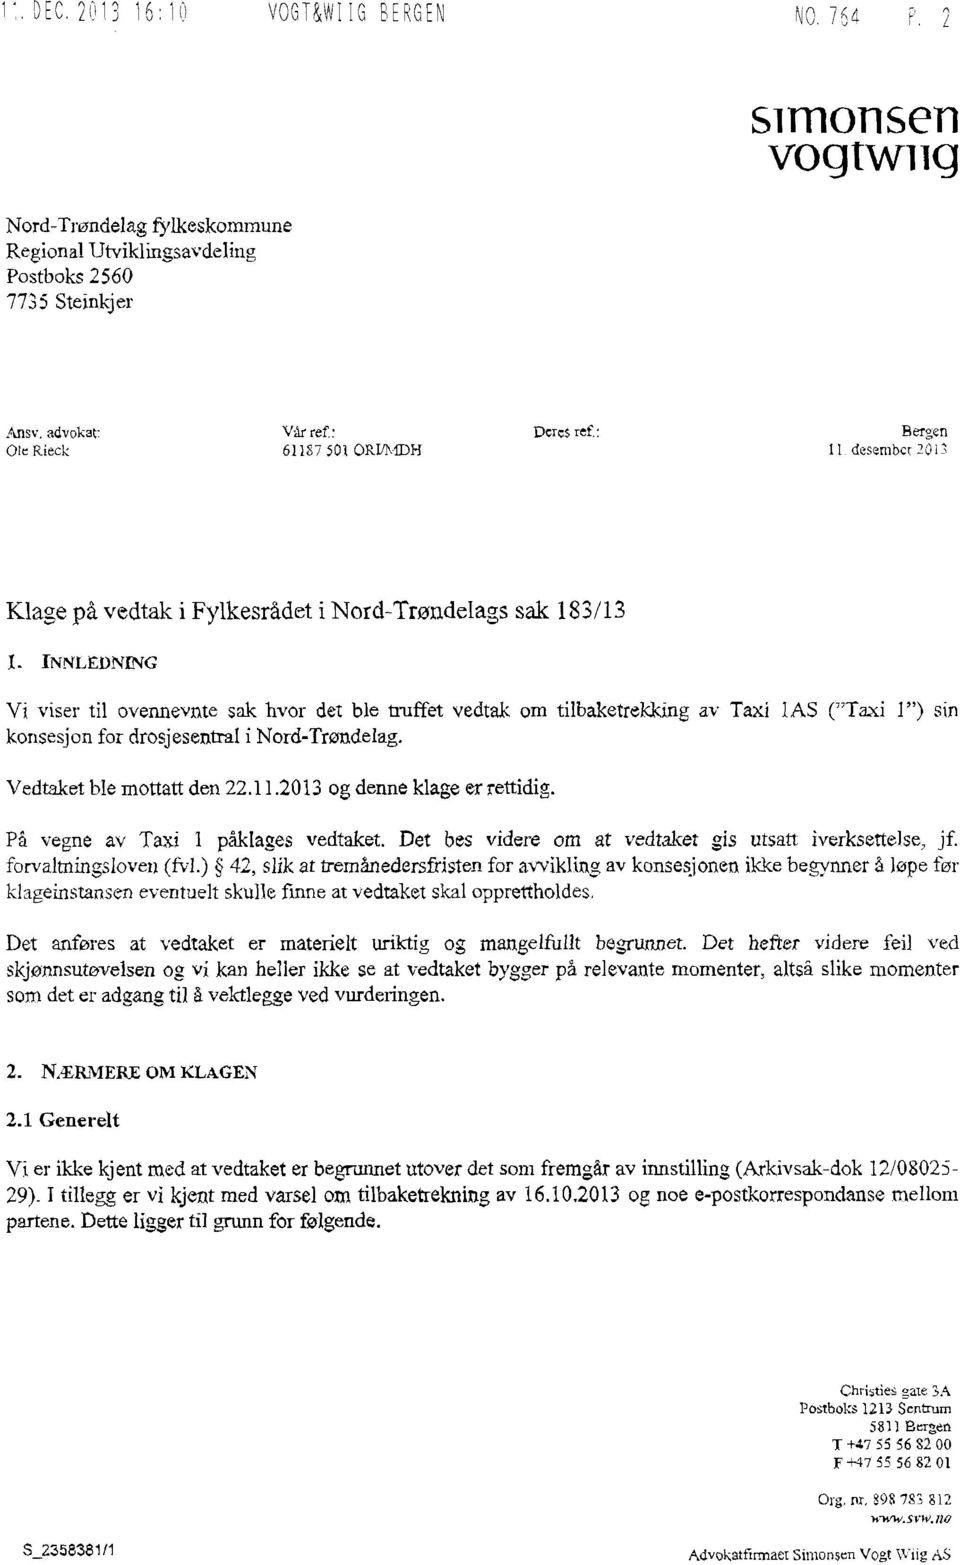 INNLEDNING Vt viser til ovennevnte sak hvor det ble truffet vedtak om tilbaketrekking av Taxi 1AS ("Taxi 1") sin konsesjon for drosjesentra1i Nord-Trøndelag. Vedtaket ble mottatt den 22.11.